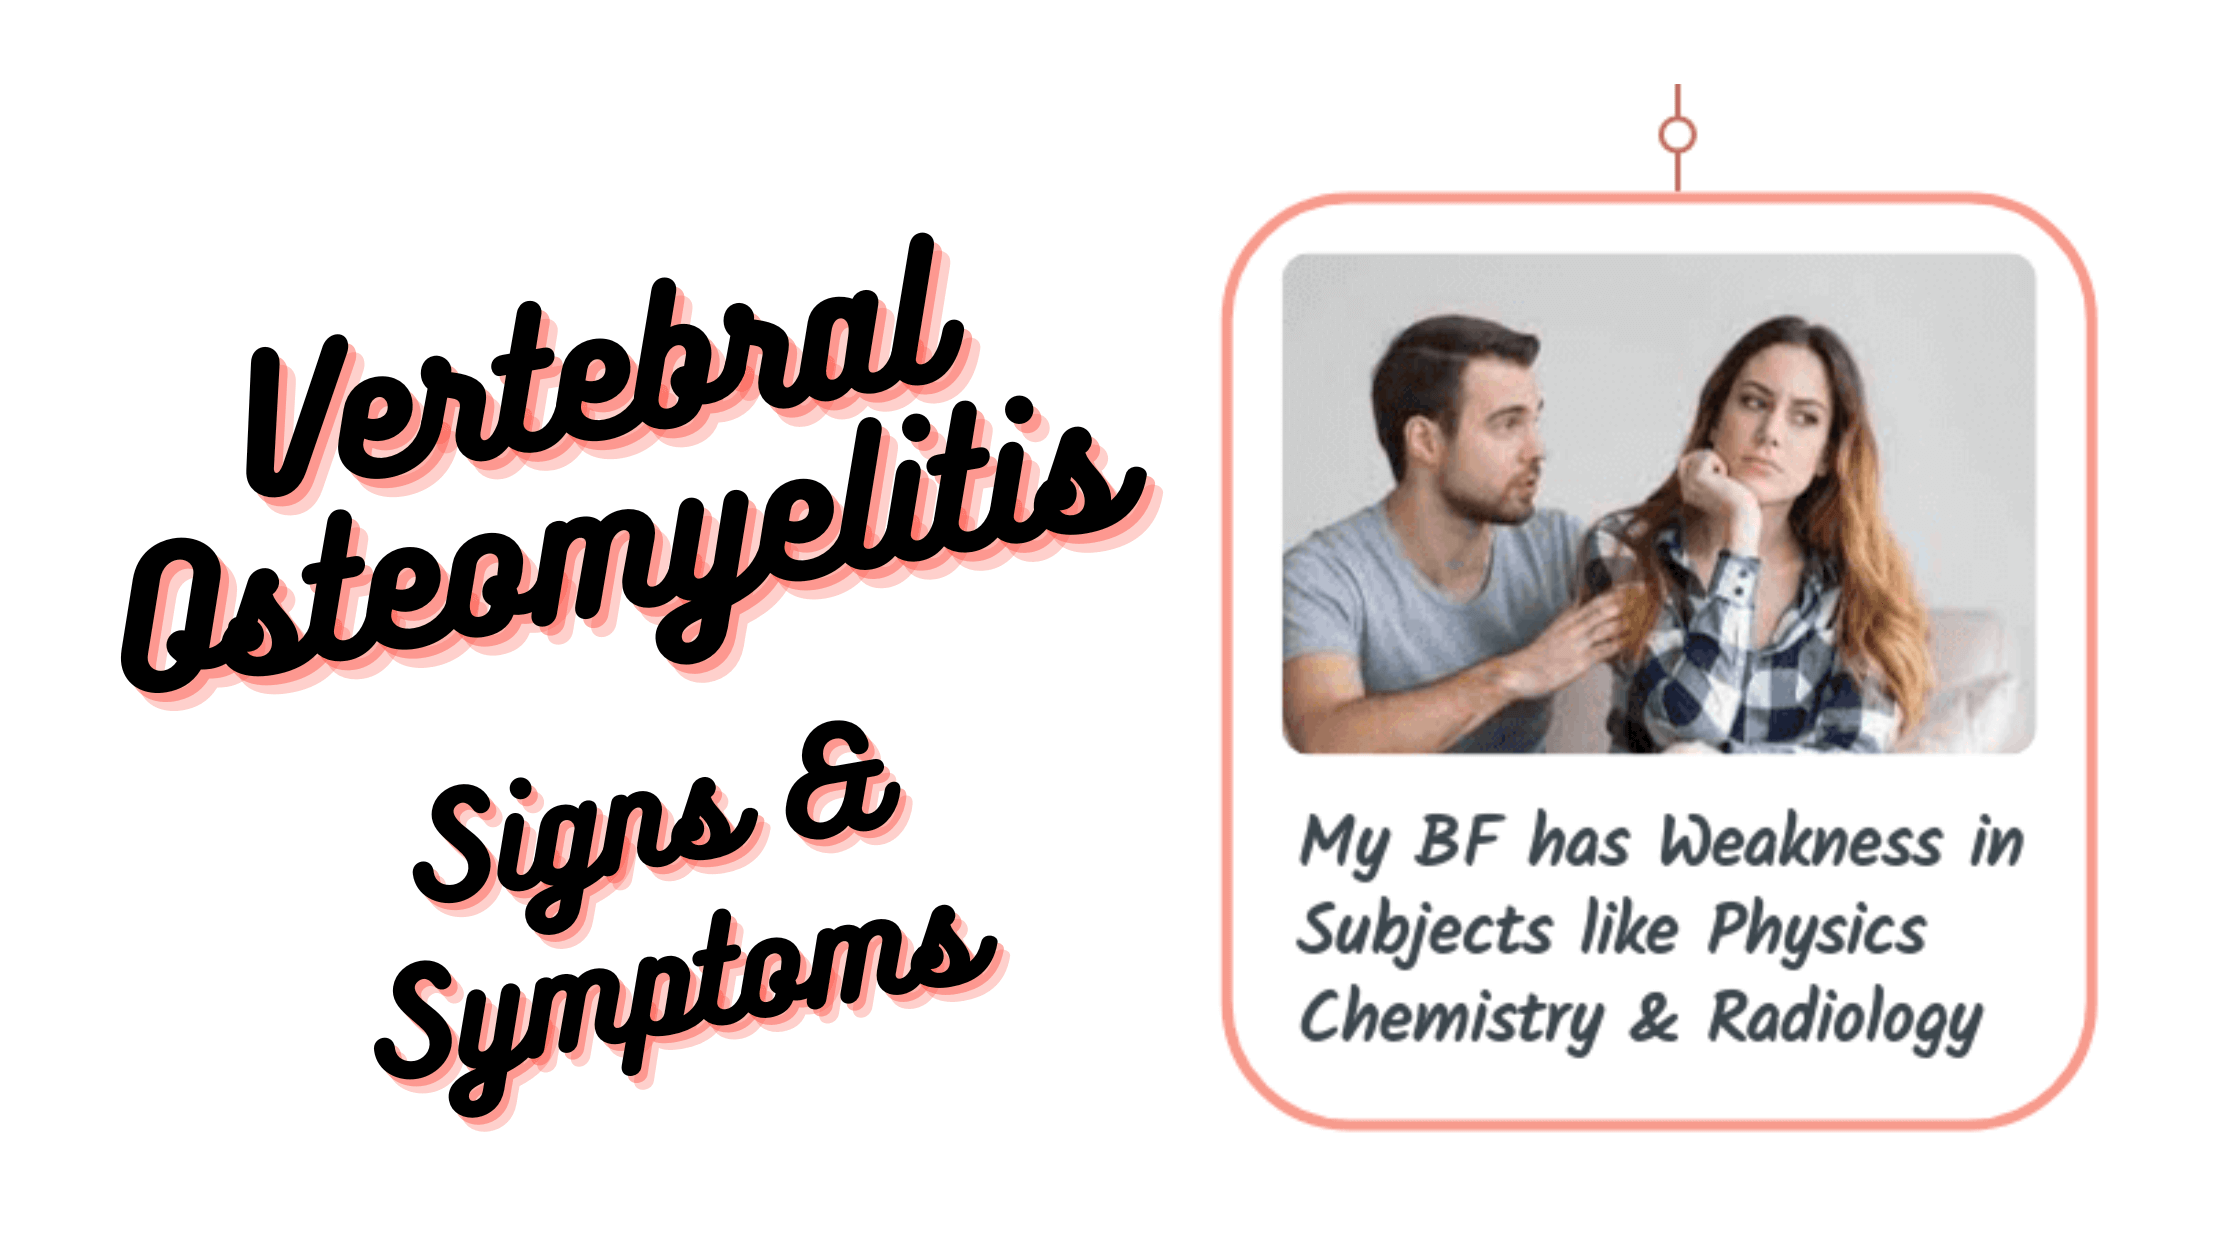 Vertebral osteomyelitis Signs & Symptoms mnemonics